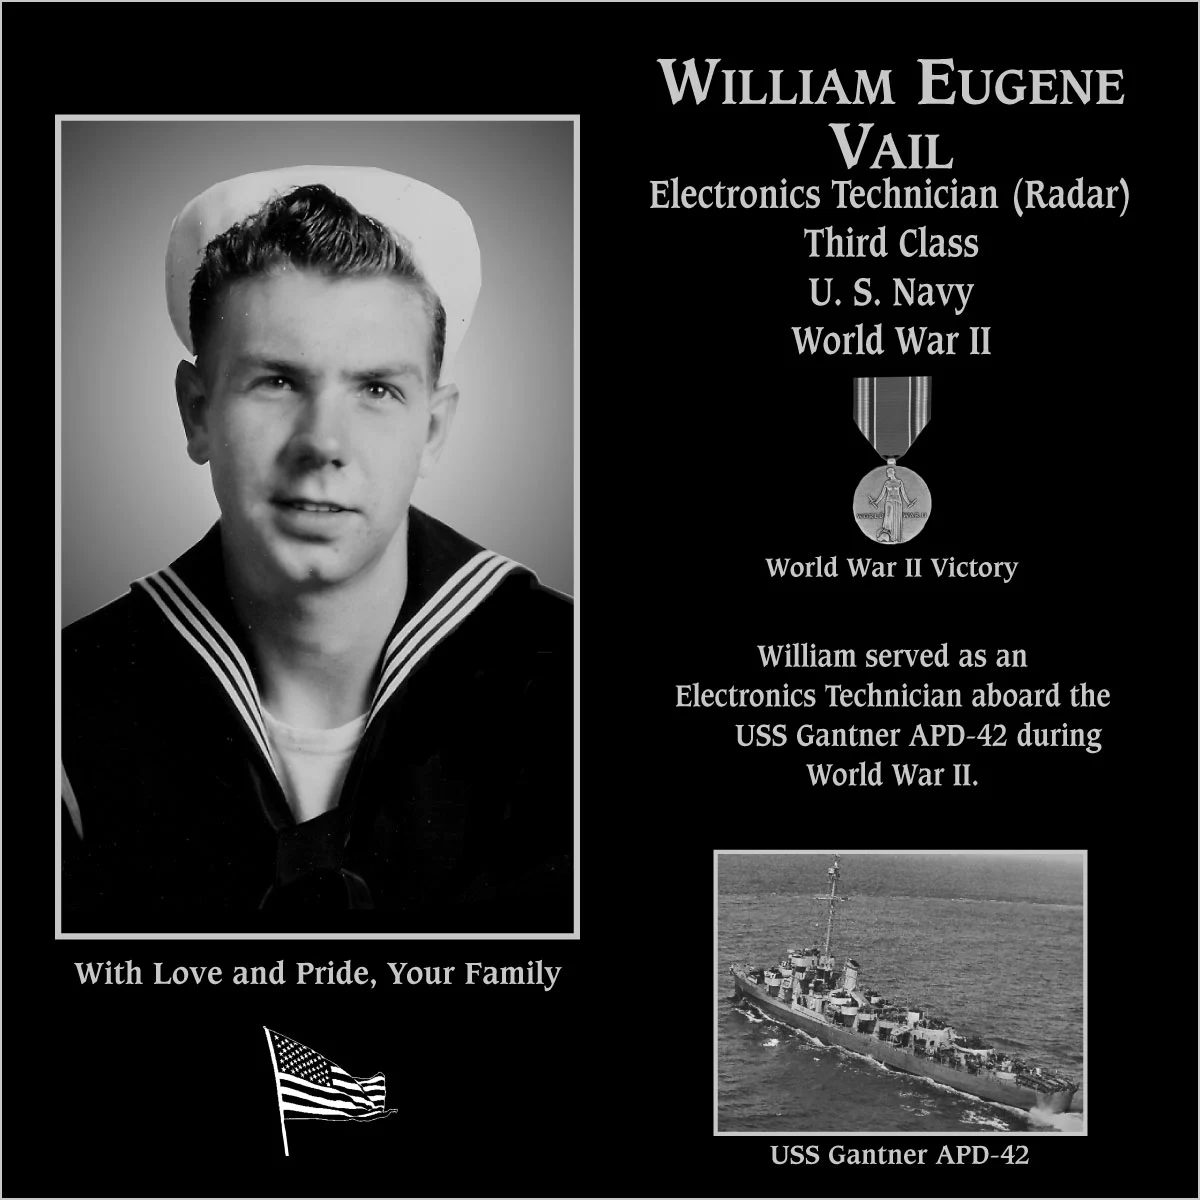 William Eugene Vail